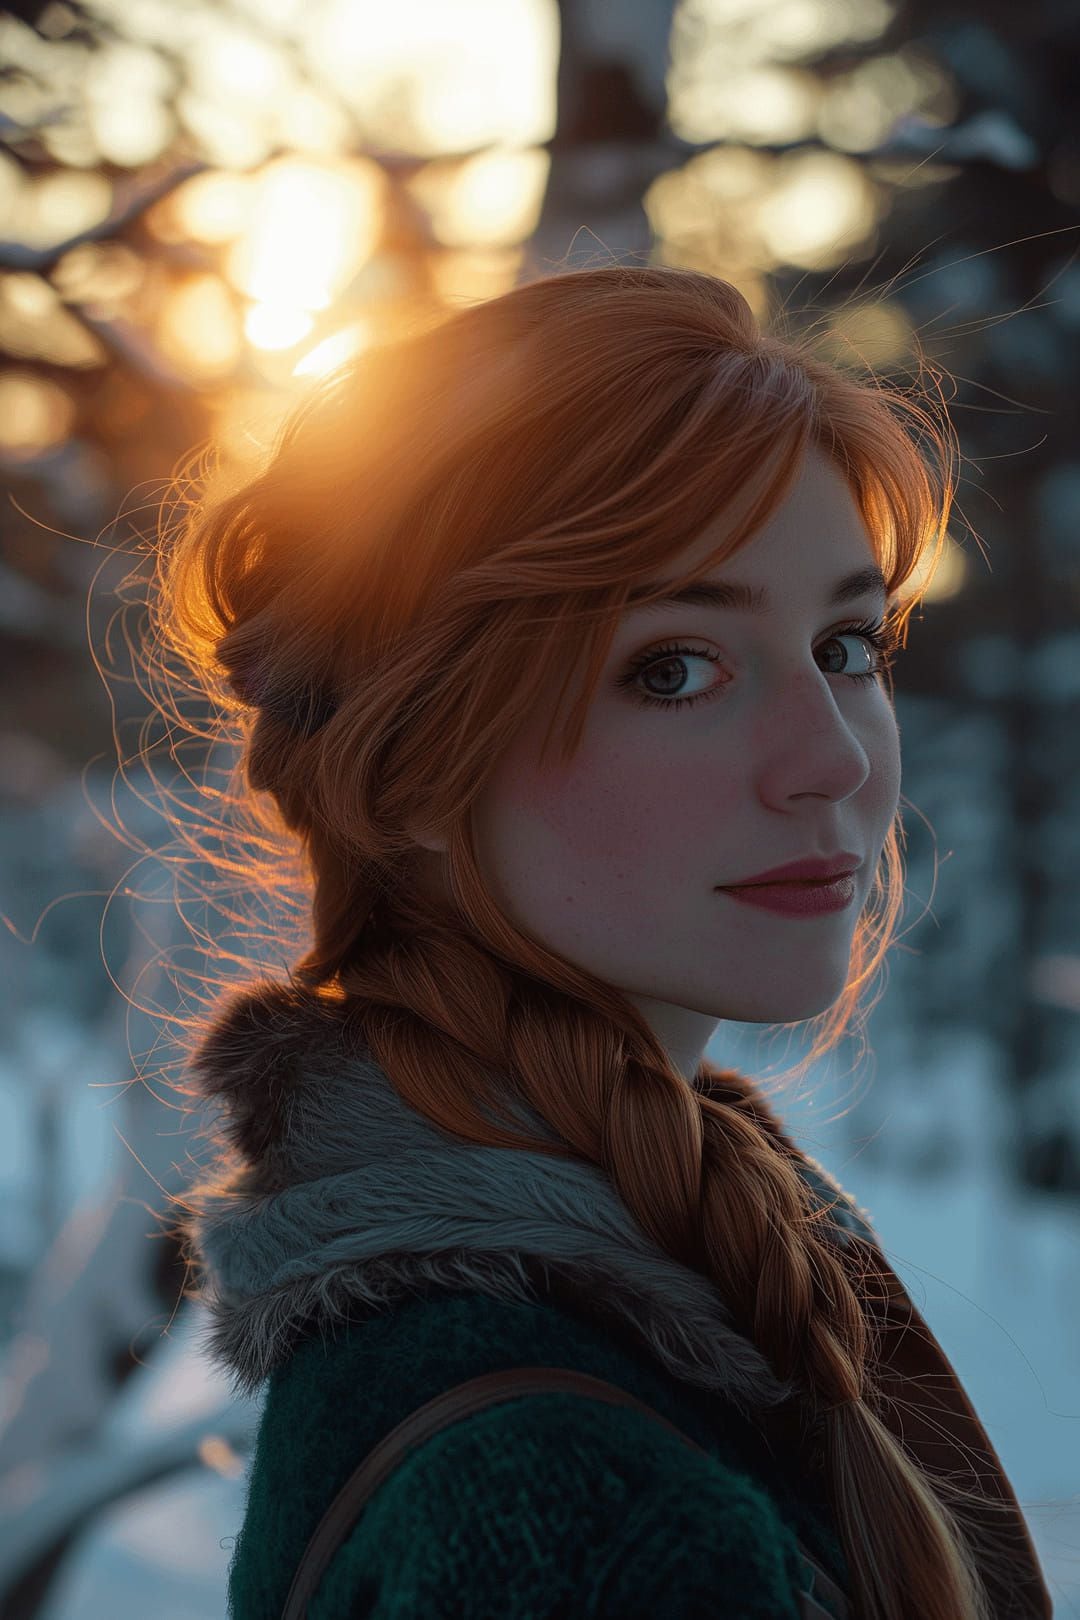 Anna de Frozen en la vida real según una IA